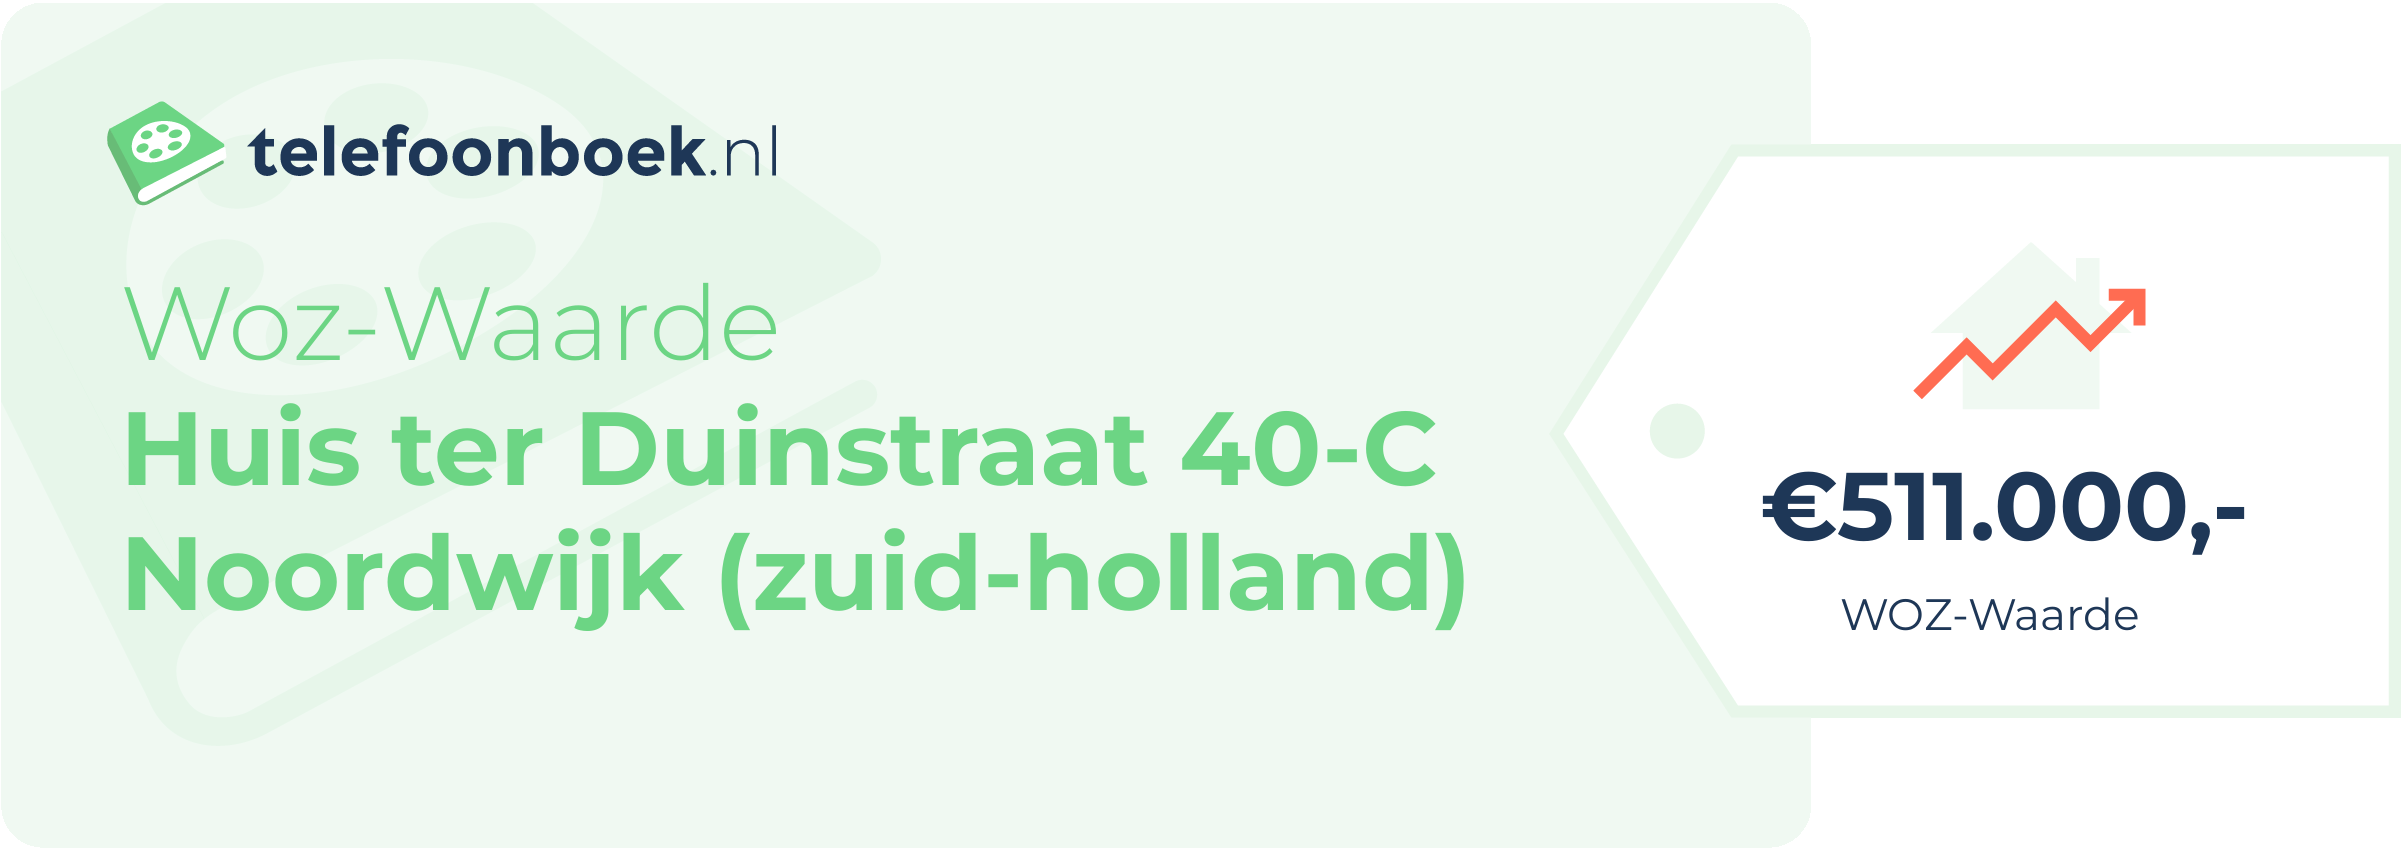 WOZ-waarde Huis Ter Duinstraat 40-C Noordwijk (Zuid-Holland)